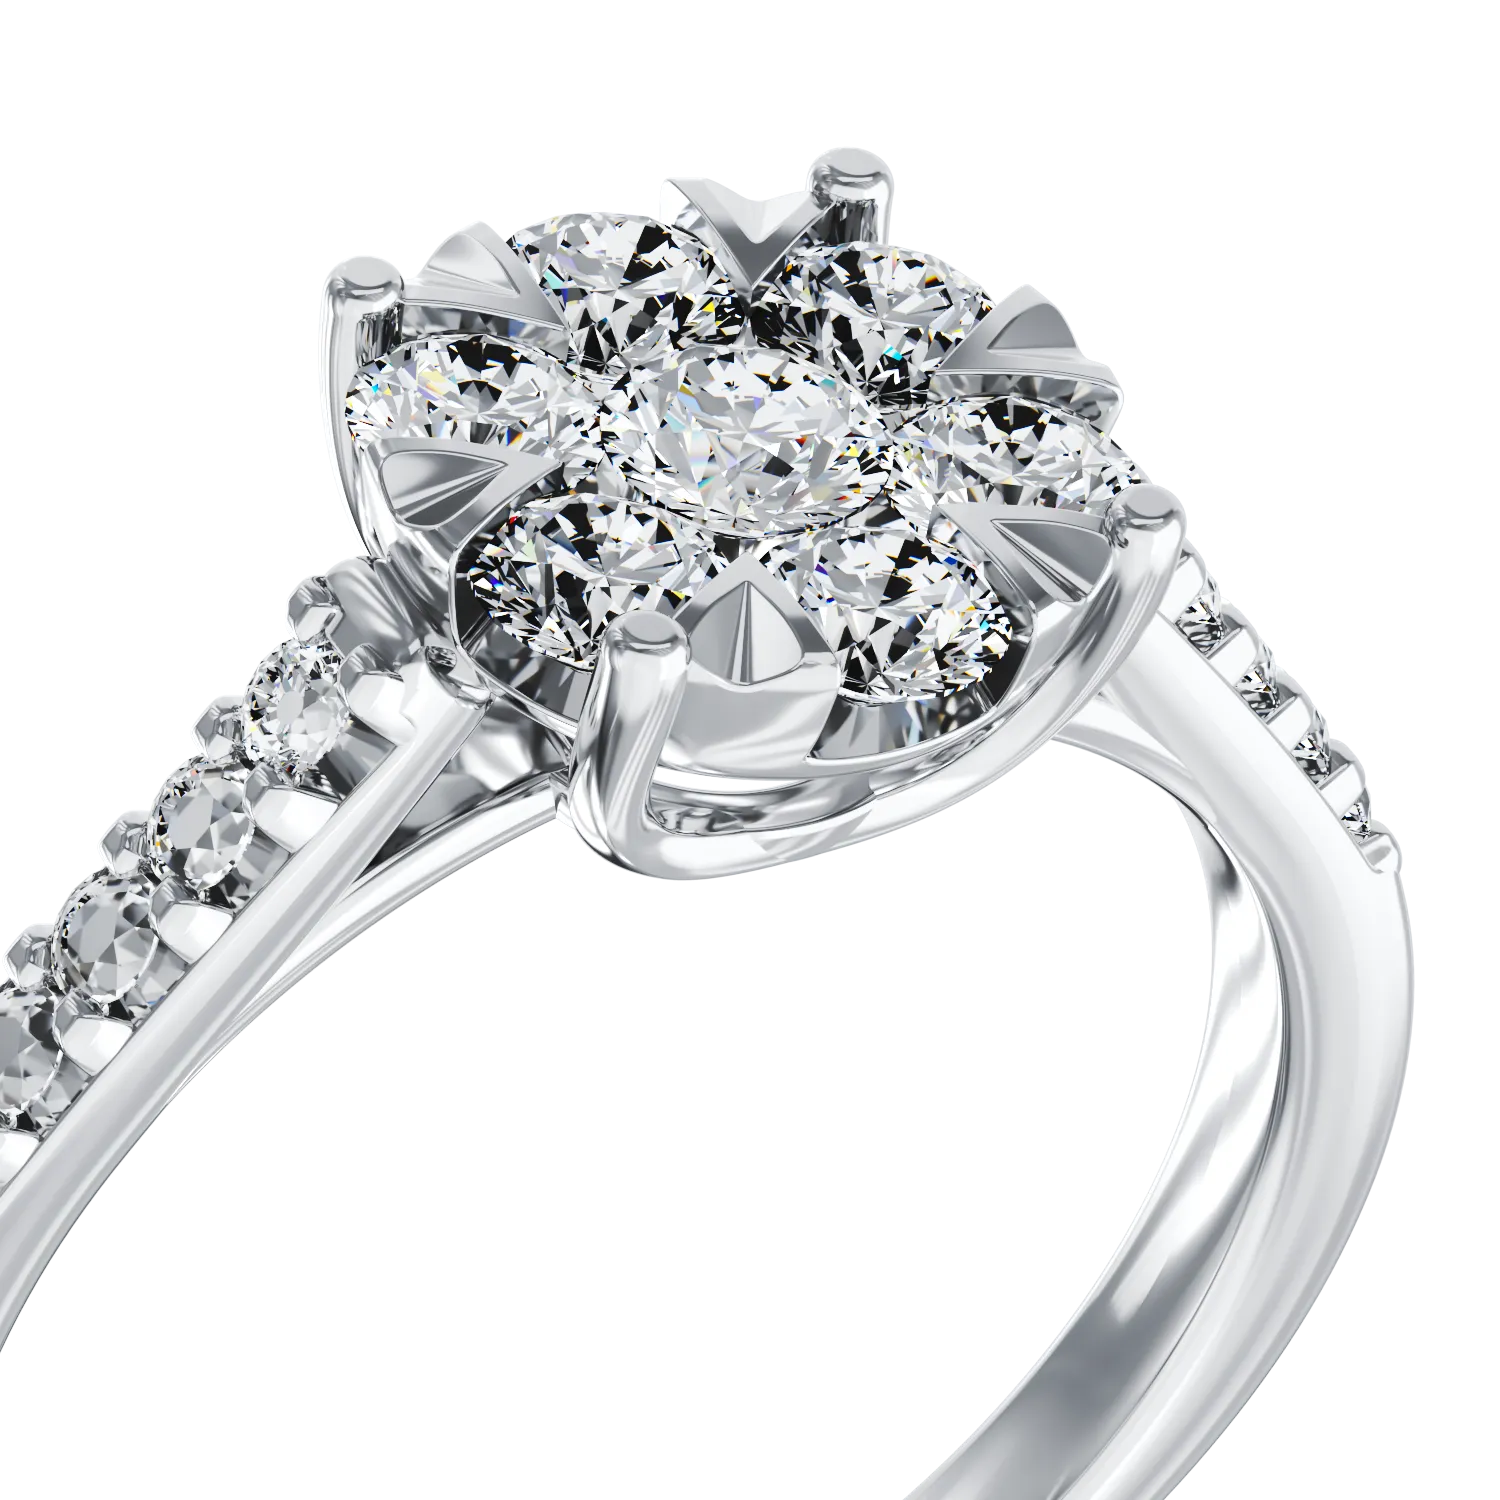 Eljegyzési gyűrű 18K-os fehér aranyból 17 darab 0.5ct gyémánttal